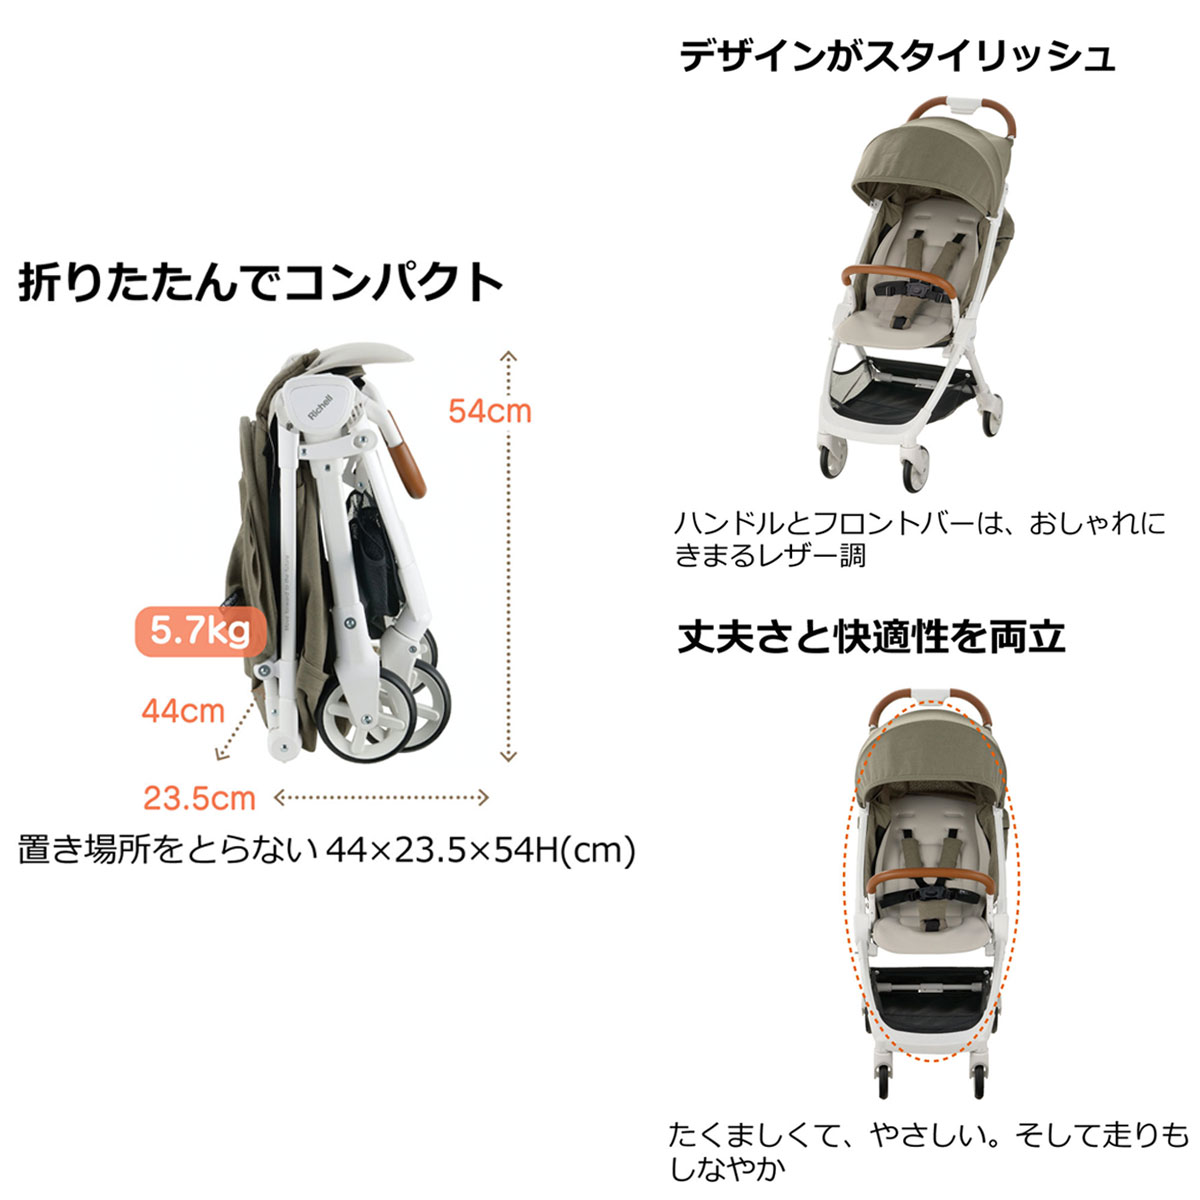 日本良品 / リッチェル スプレ コンパクトベビーカー 1ヵ月から36ヵ月